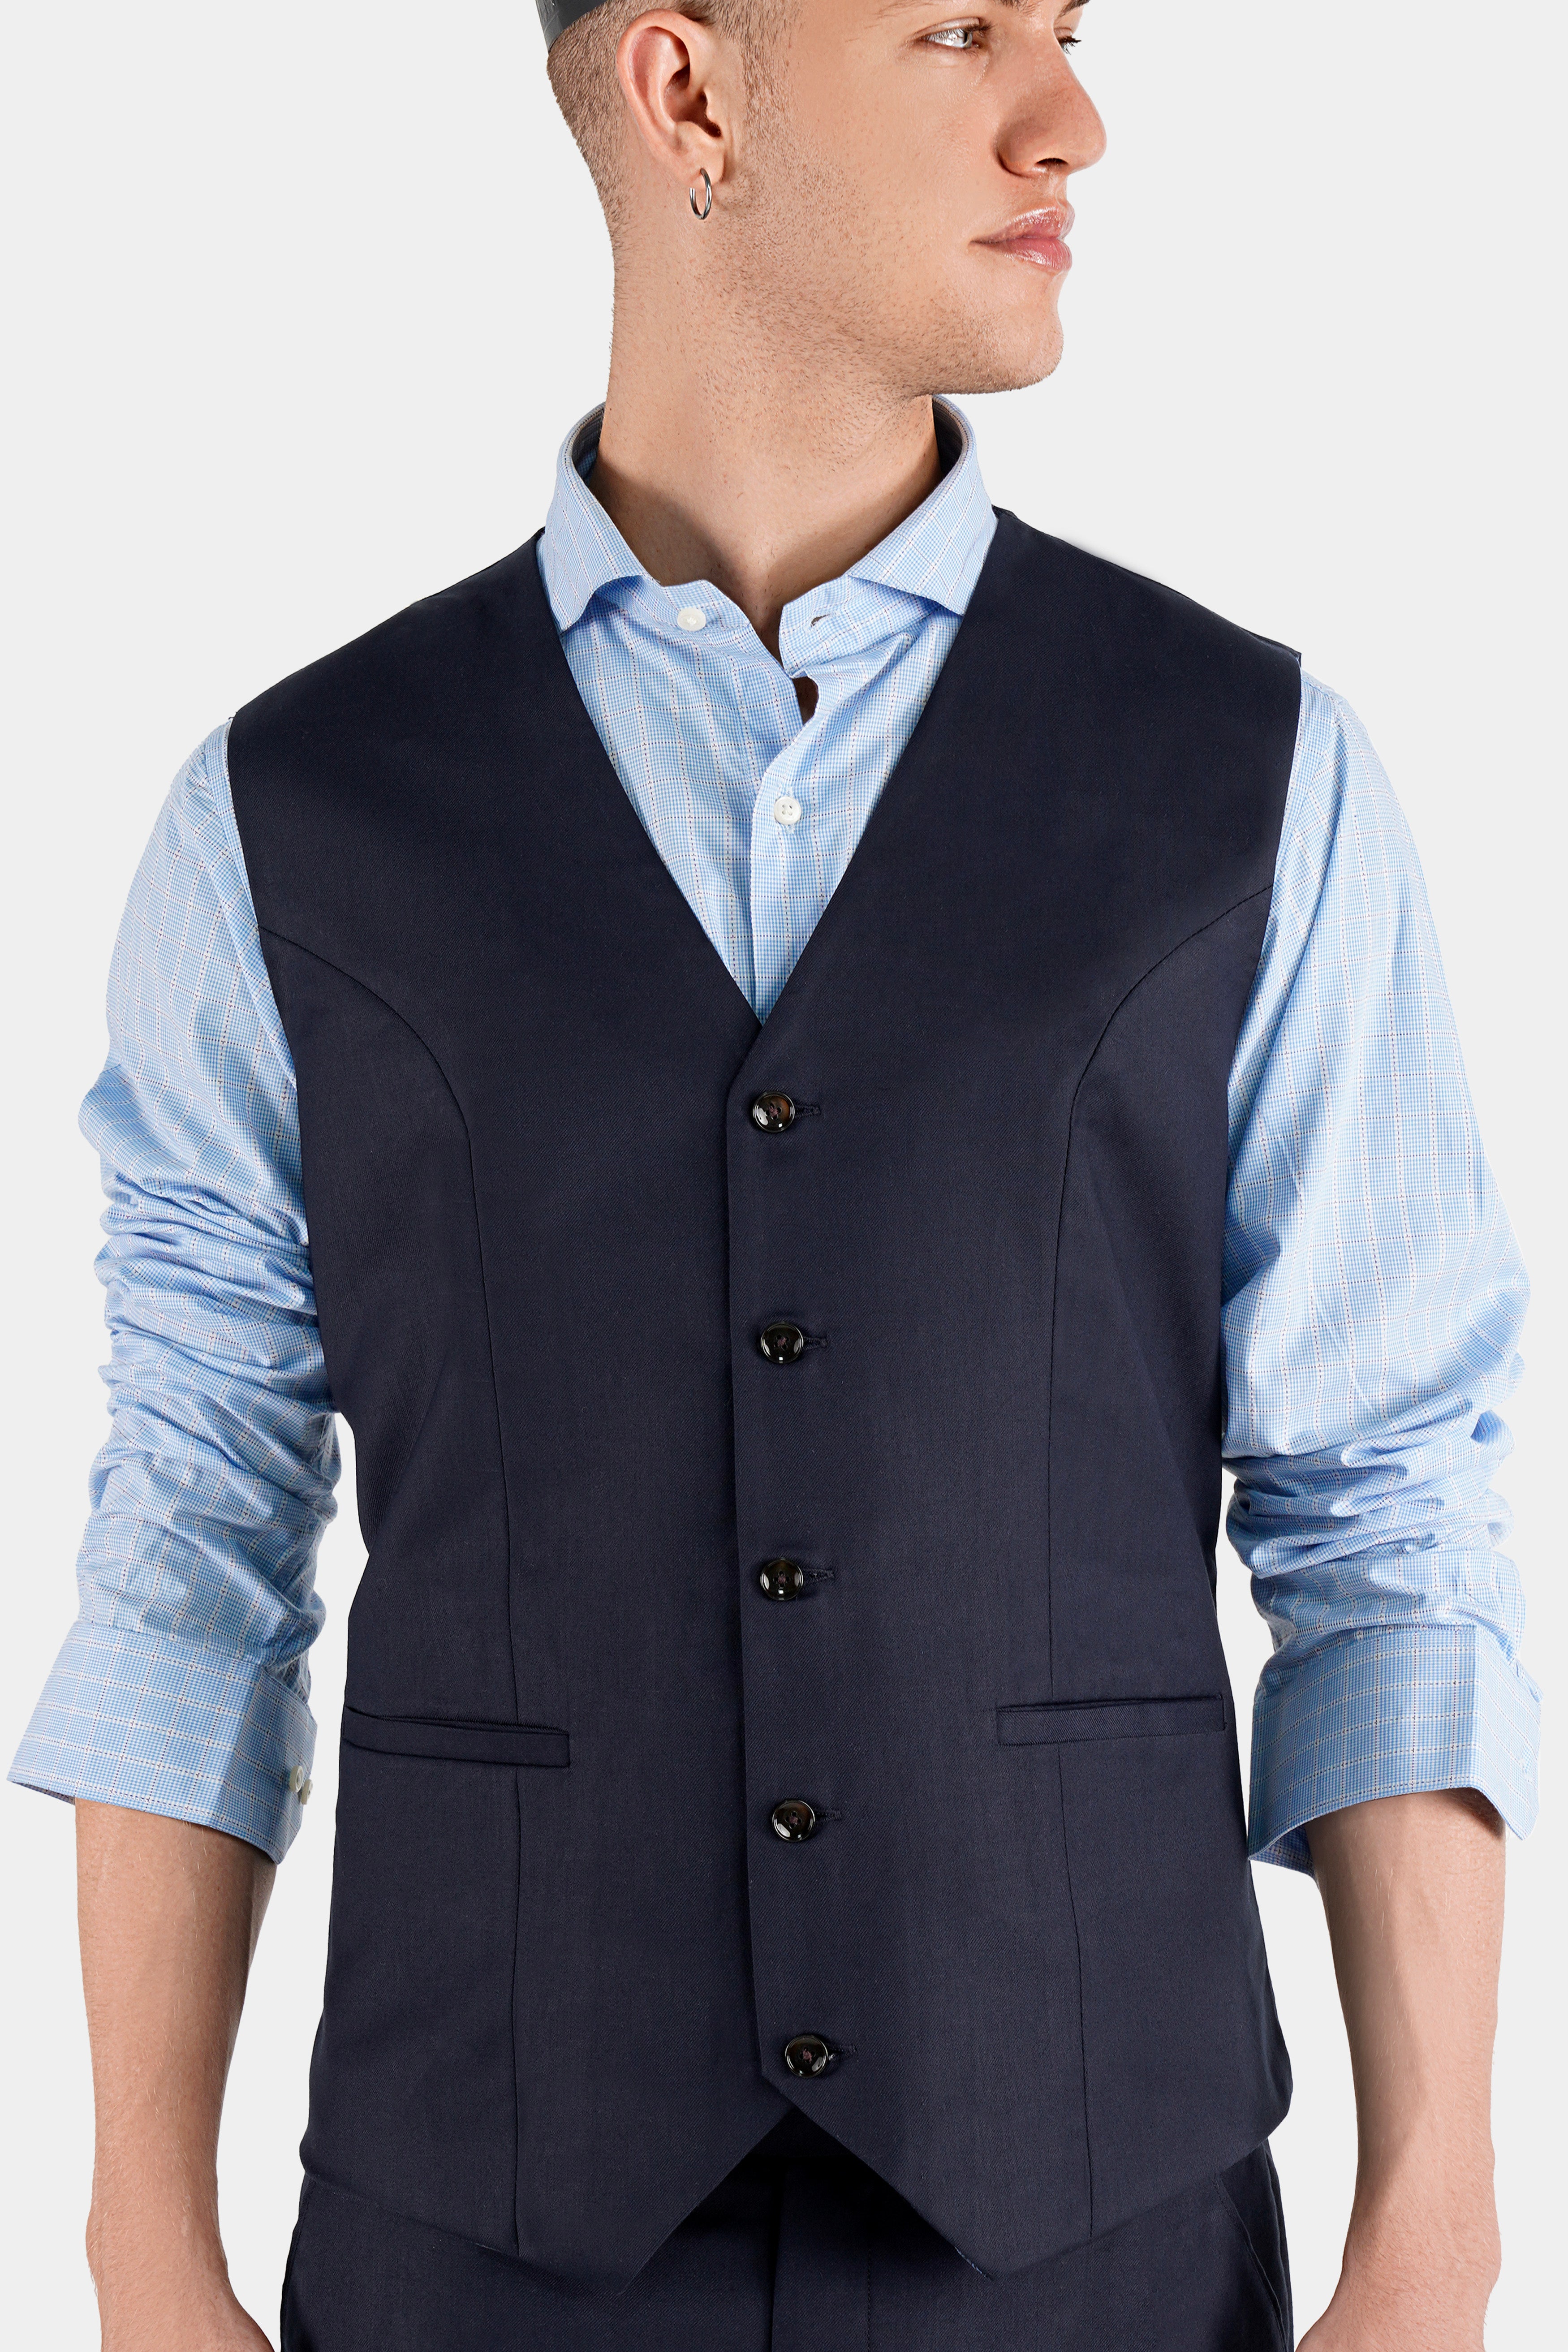 Mirage Blue Wool Rich  Waistcoat